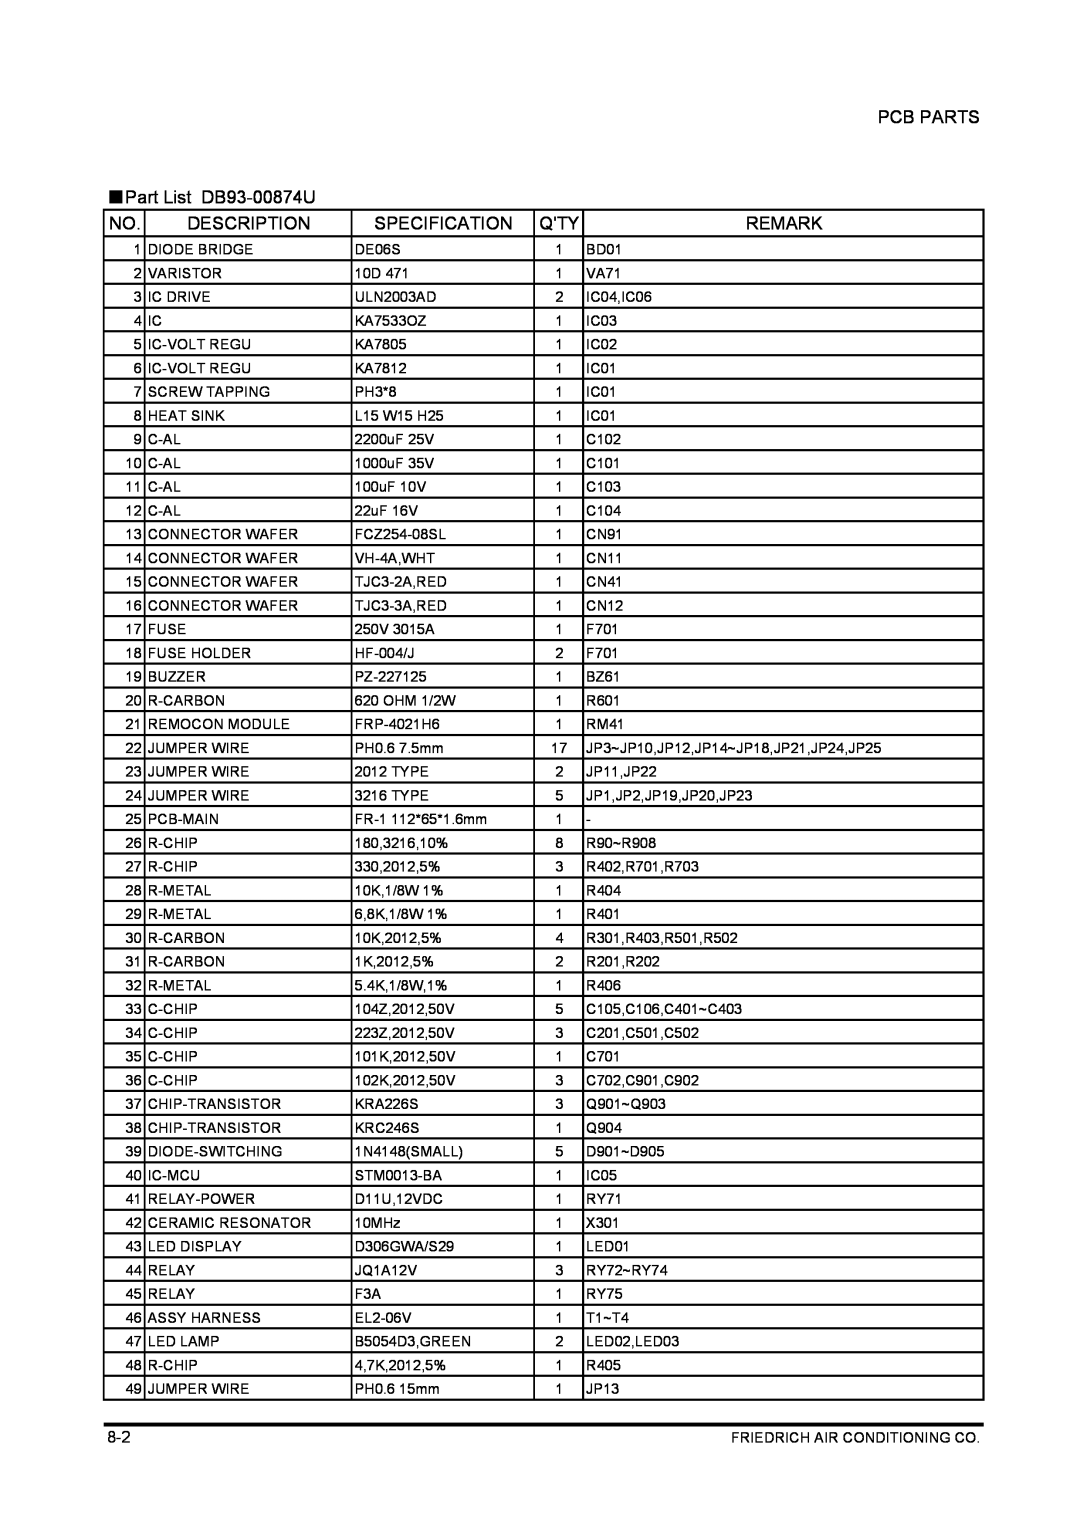 Friedrich SP05A10 service manual PCB PARTS Part List DB93-00874U, Description, Specification, Remark 